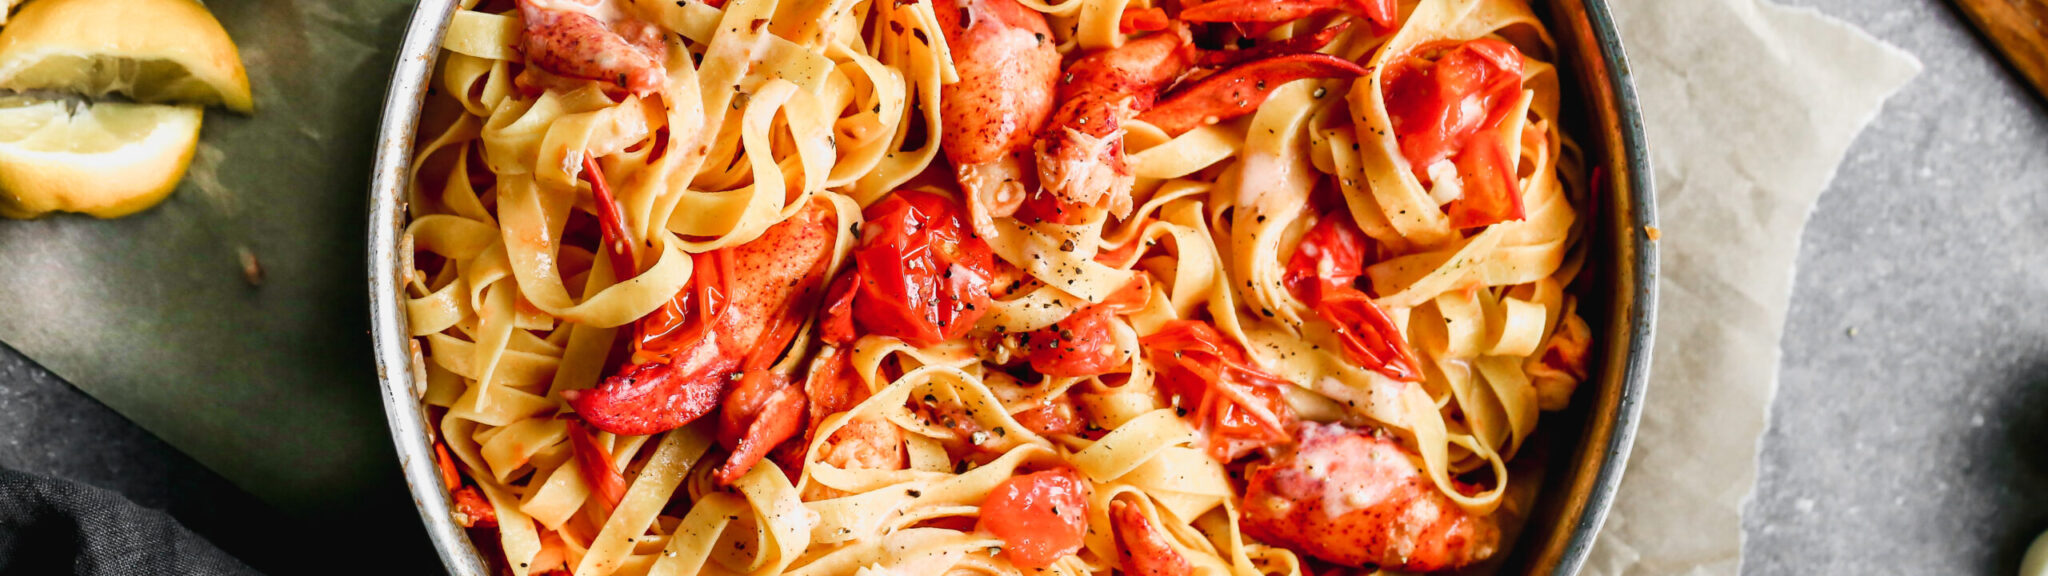 Burst Cherry Tomato and Lobster Tagliatelle recipe image